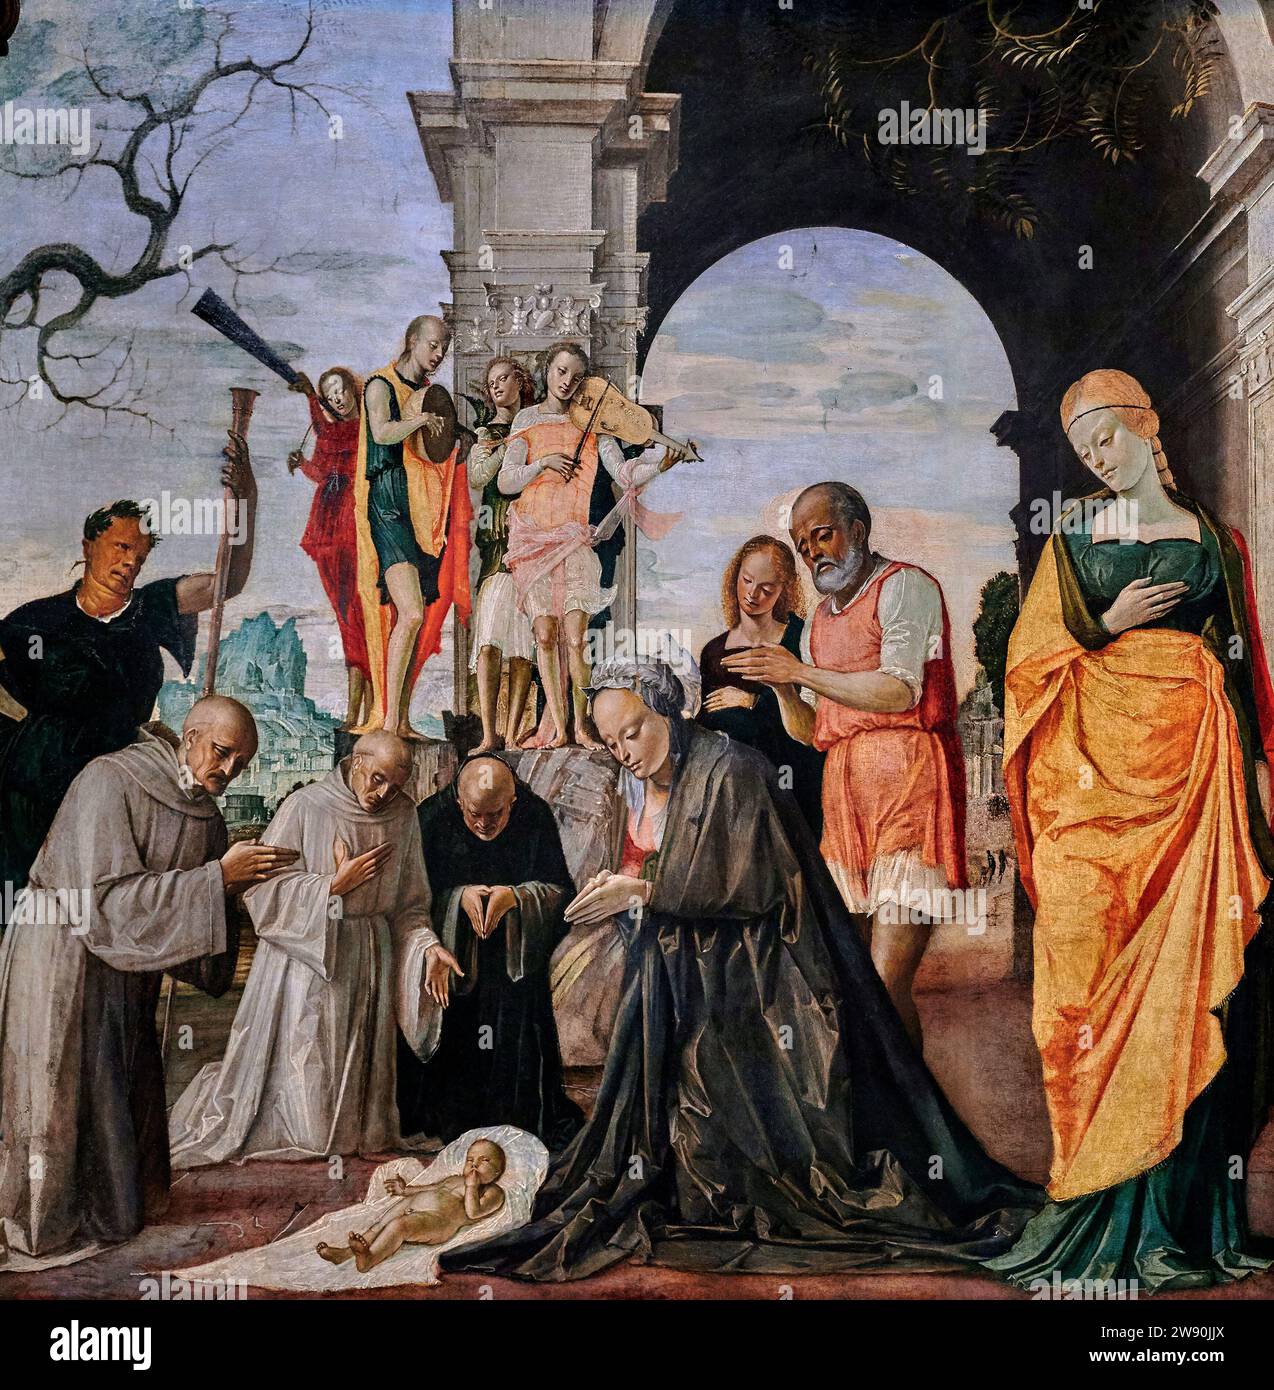 Adorazione del Bambino  - tempera e olio  su tavola - Bartolomeo Suardi detto Bramantino  - 1485 - Milano, Pinacoteca Ambrosiana Stock Photo